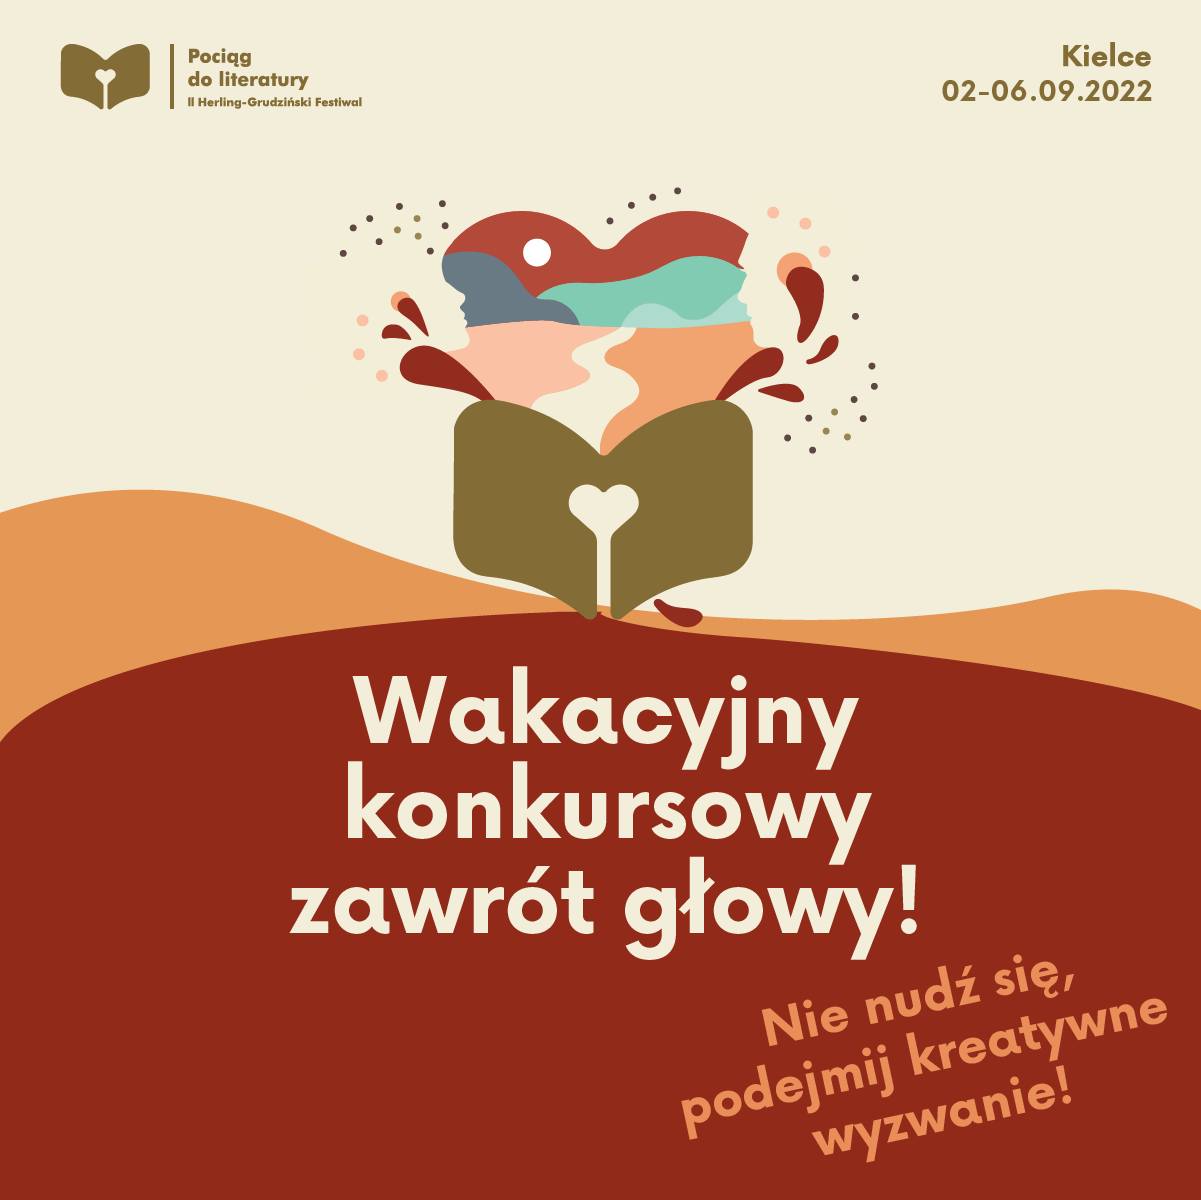 Wzgórze Zamkowe – Ośrodek Myśli Patriotycznej i Obywatelskiej oraz Miejska Biblioteka Publiczna w Kielcach zapraszają wszystkich lubiących niecodzienne wyzwania do udziału w czterech konkursach.